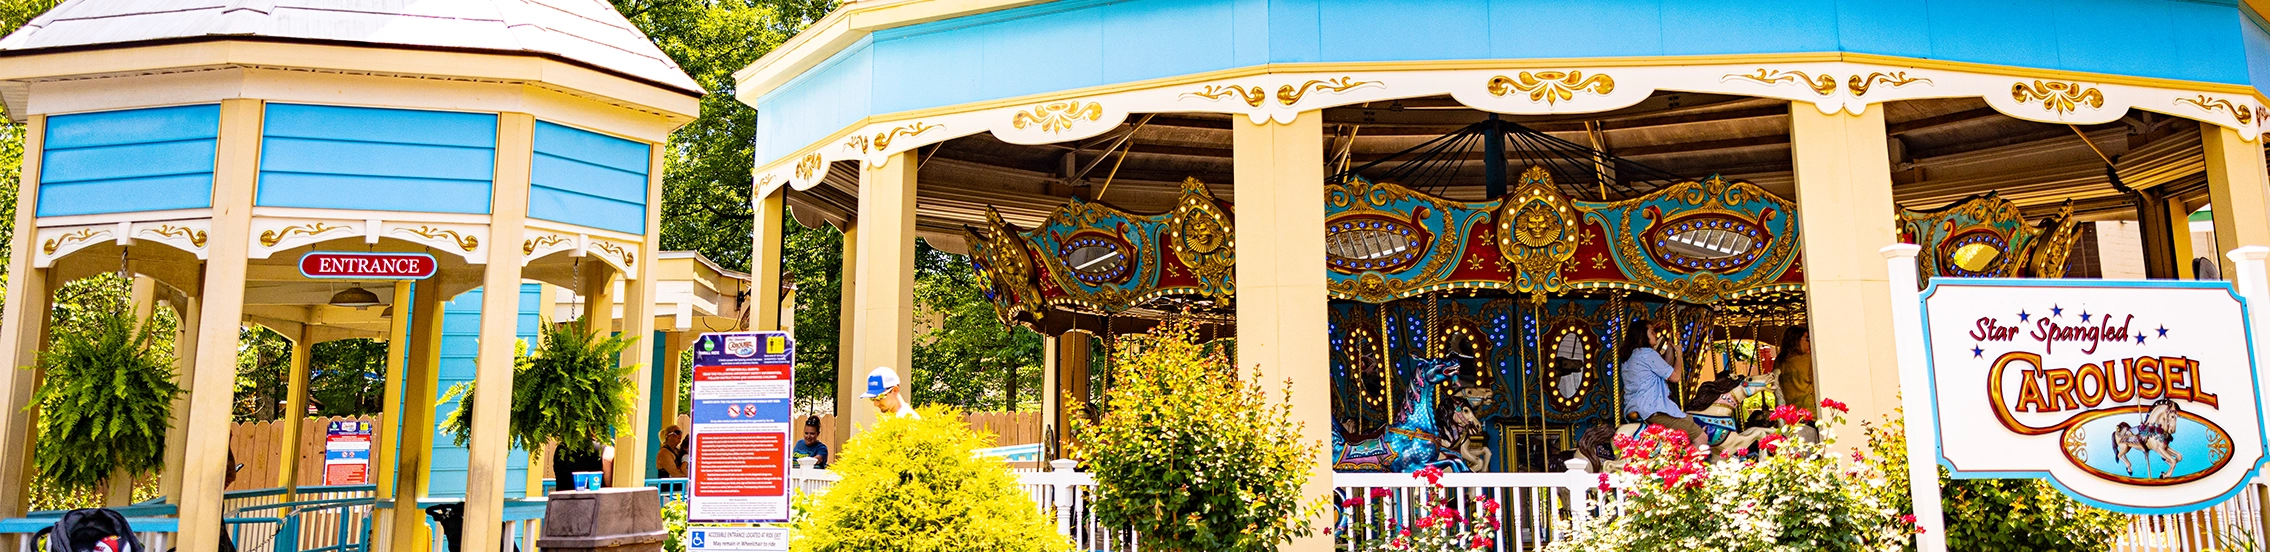 Star Spangled Carousel at Holiday World & Splashin' Safari.